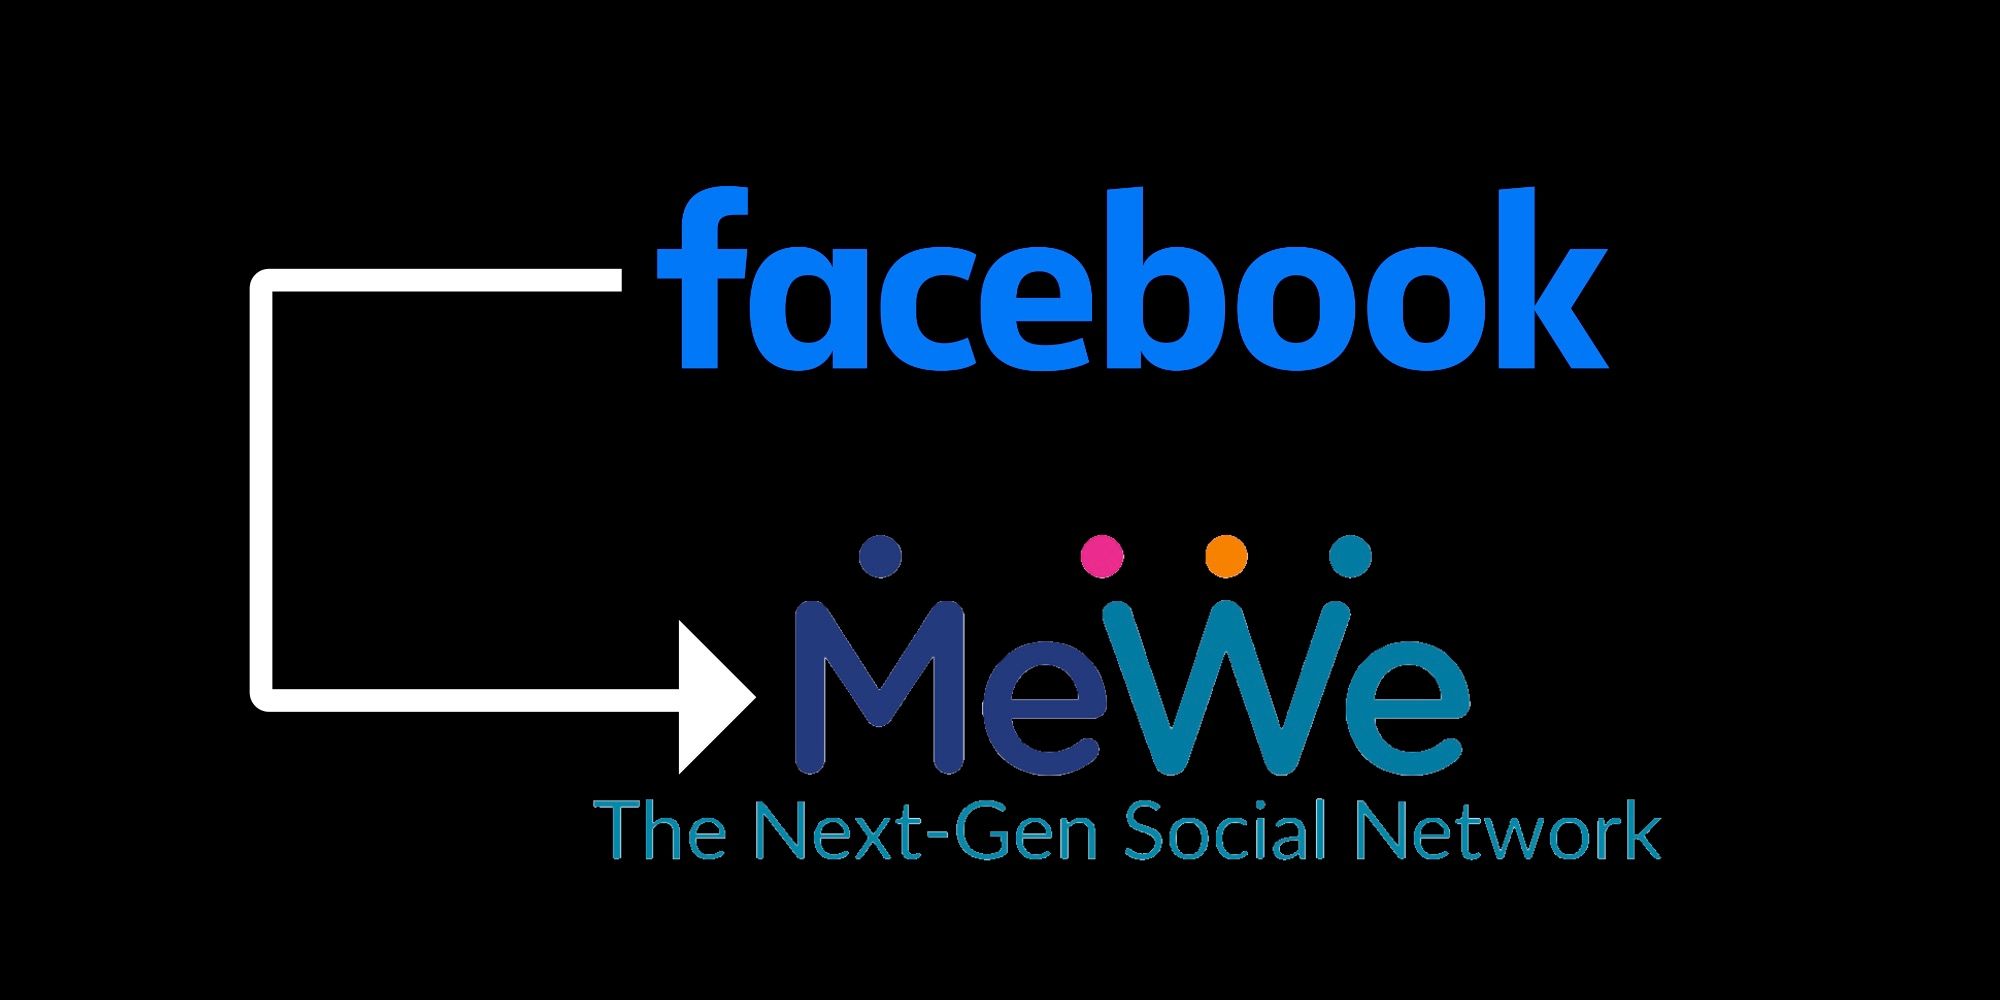 Facebook and MeWe logos